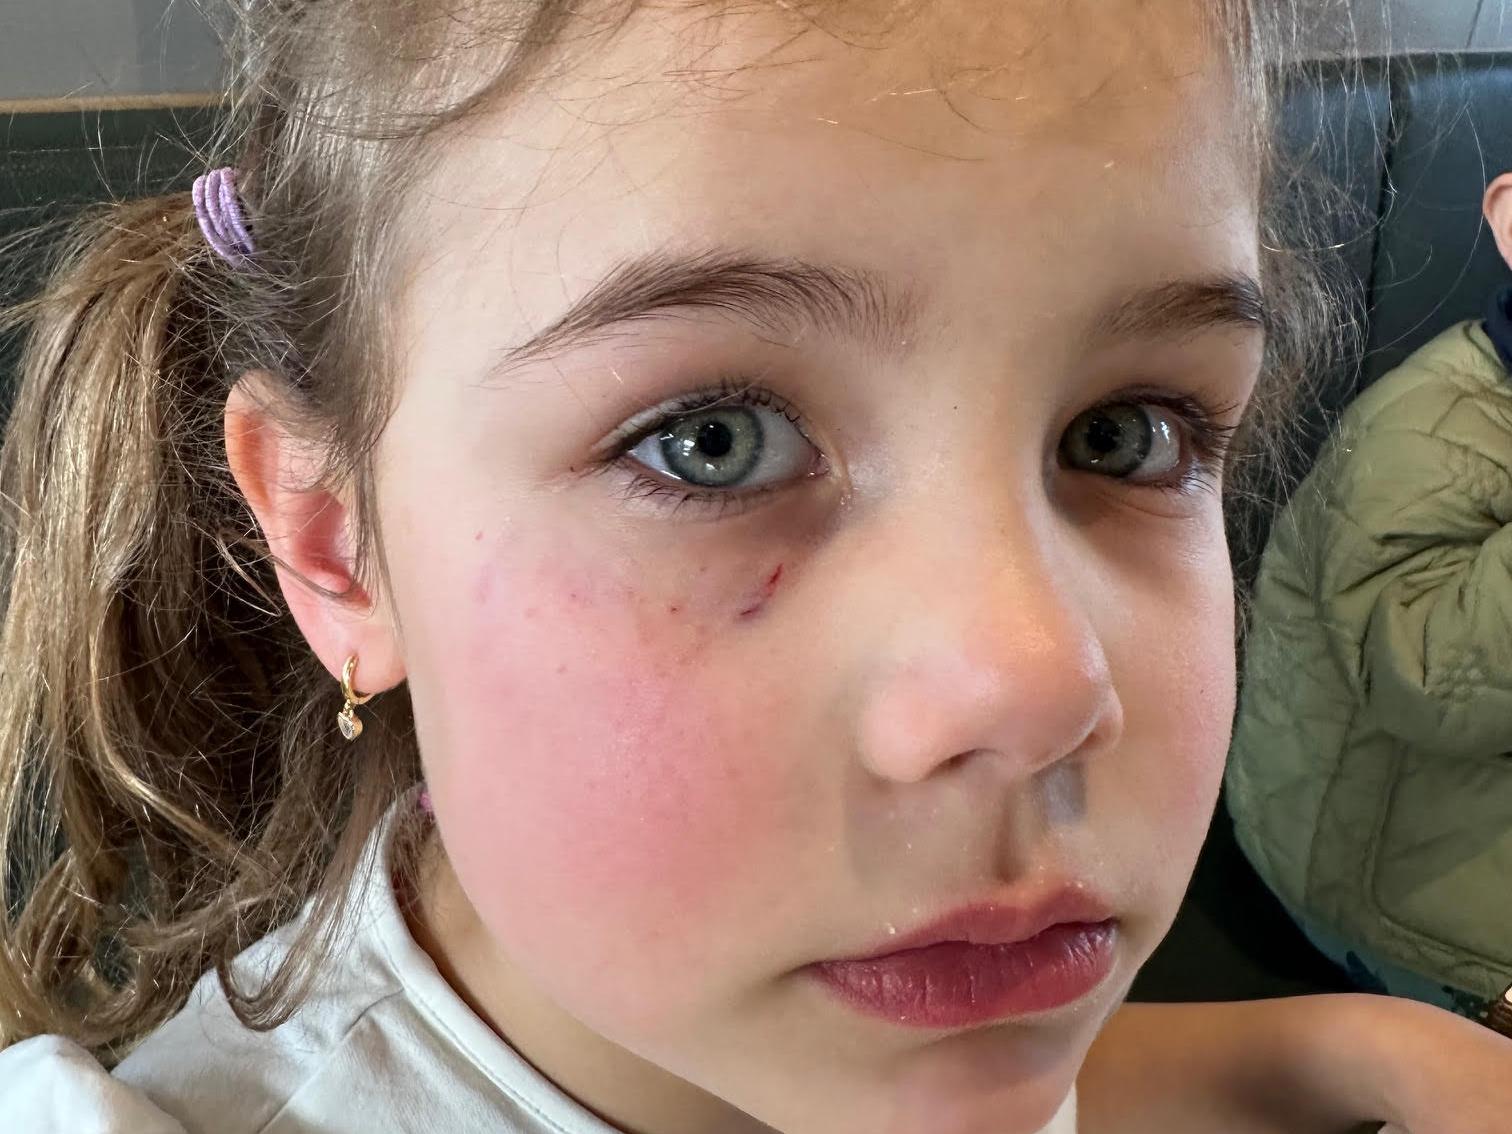 Edith, 5, väntade på mat – blev biten i ansiktet av okänd